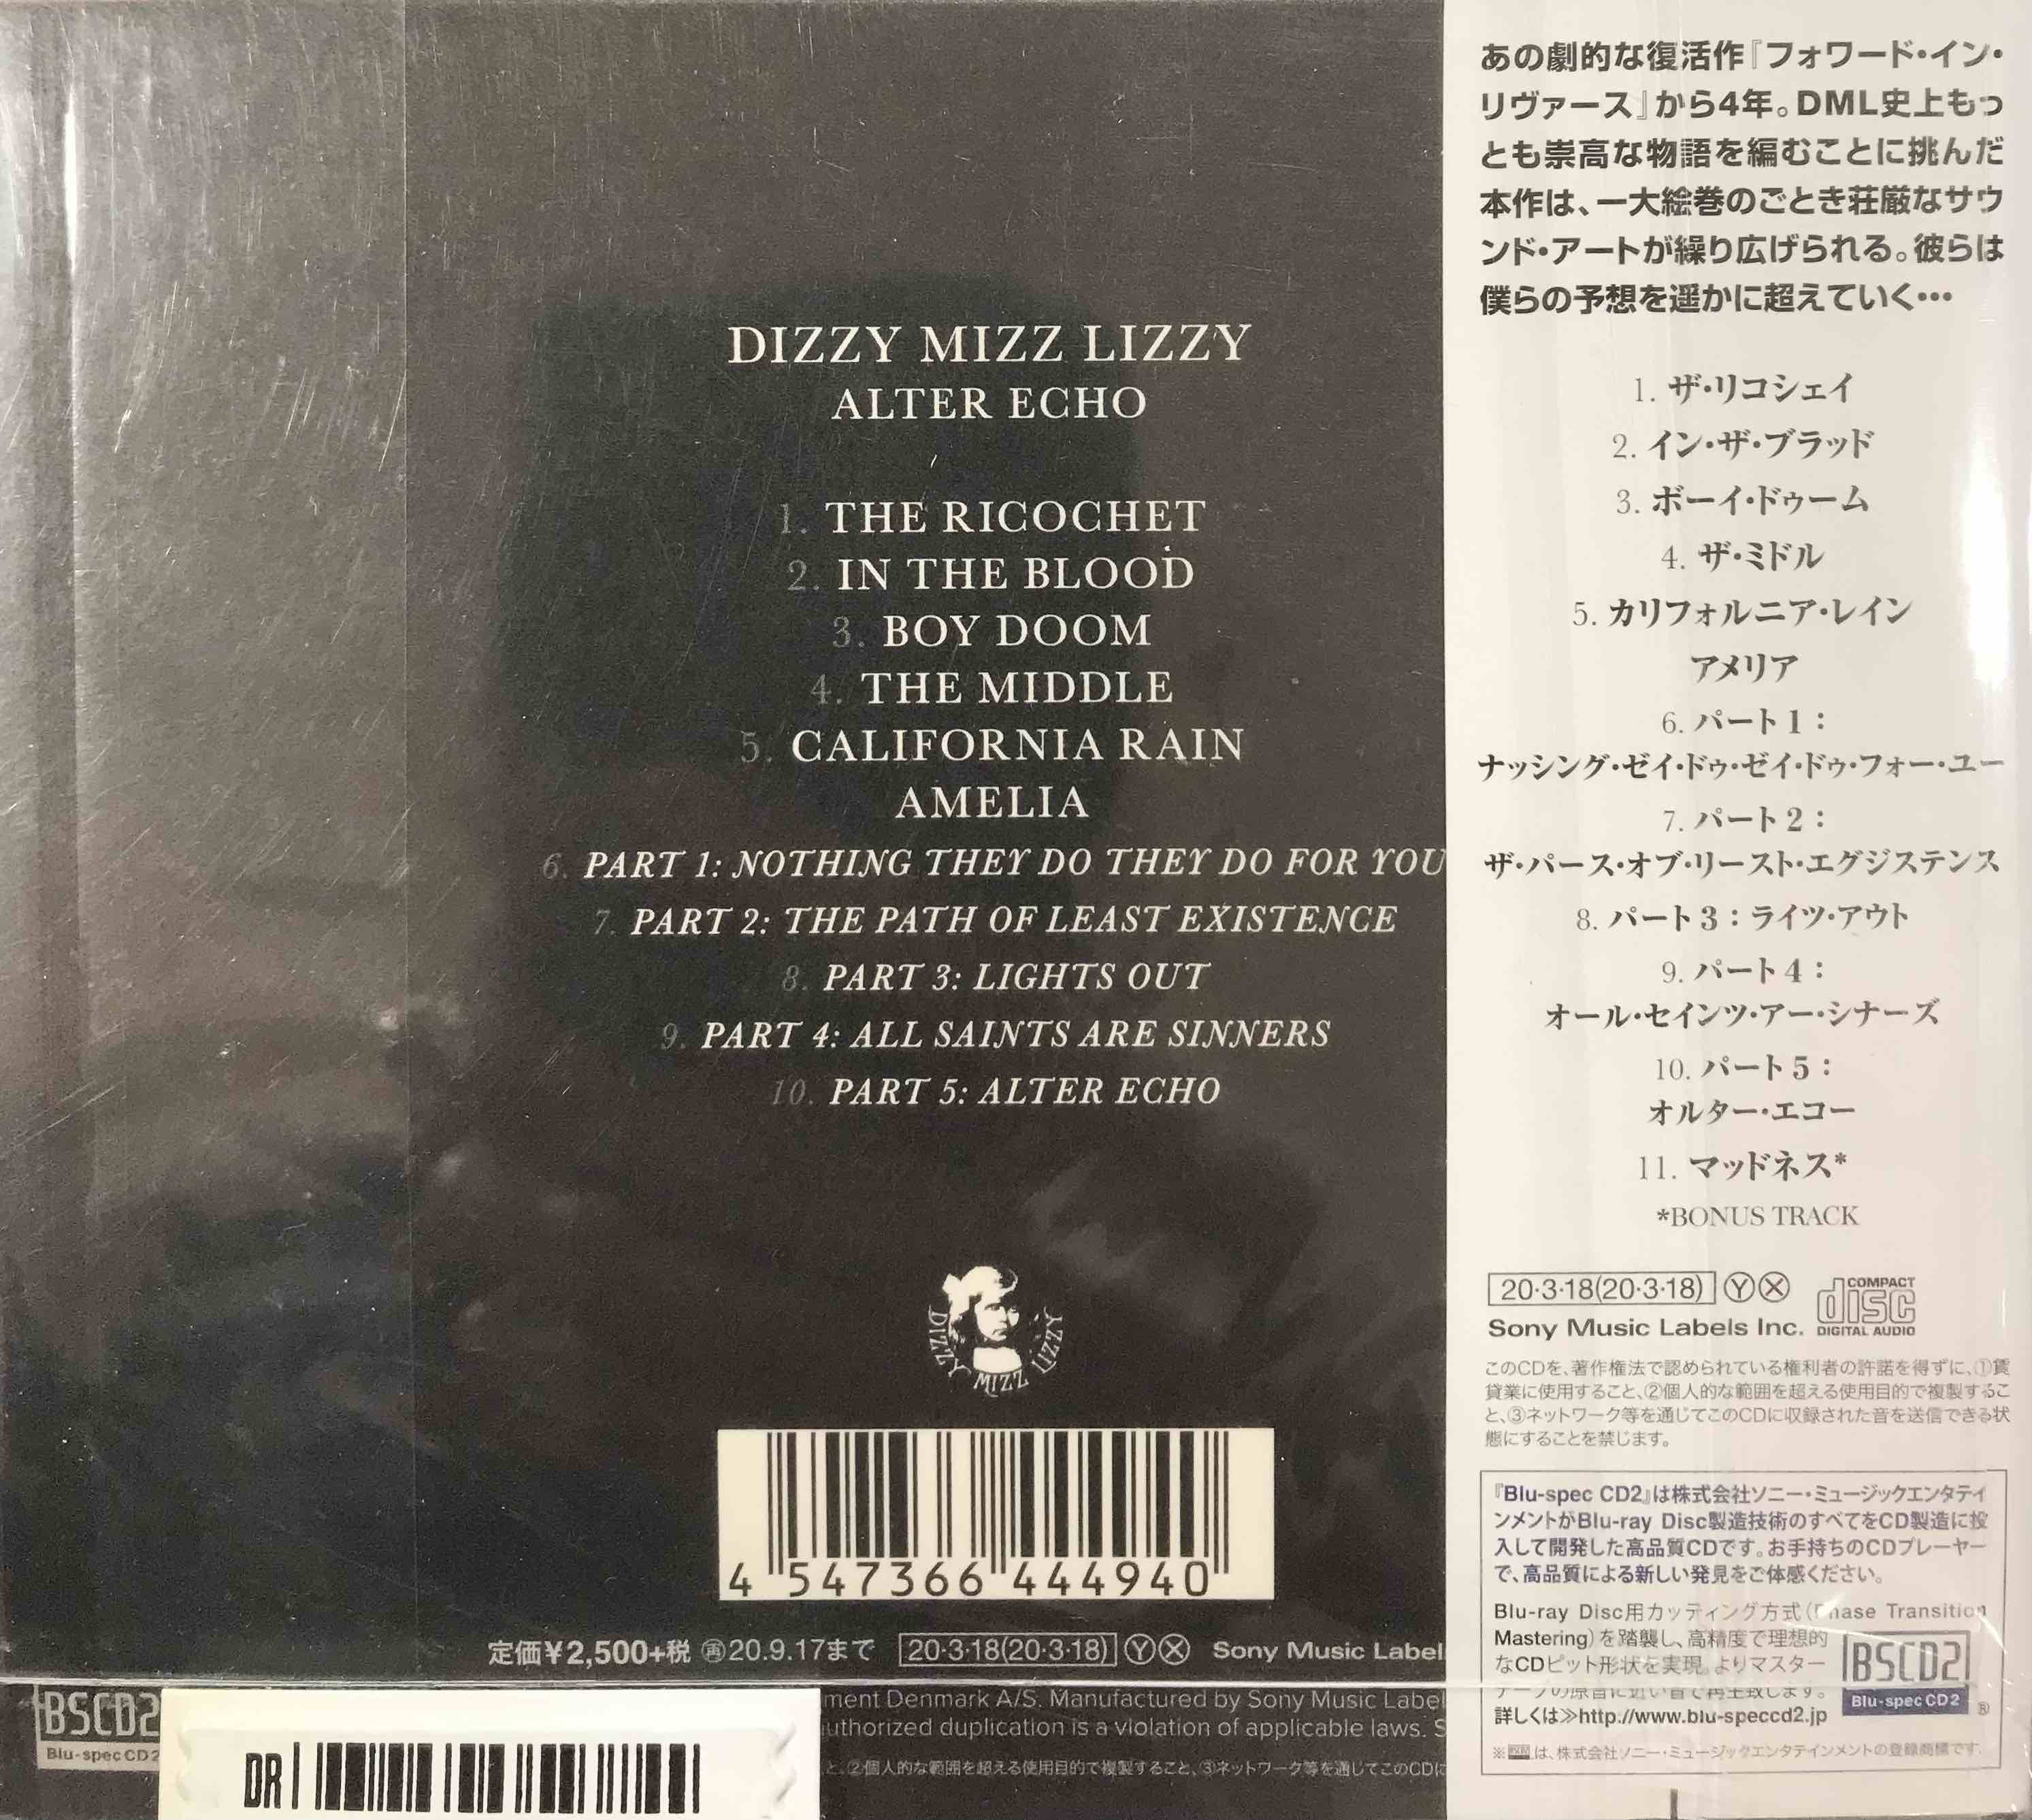 Dizzy Mizz Lizzy – Alter Echo